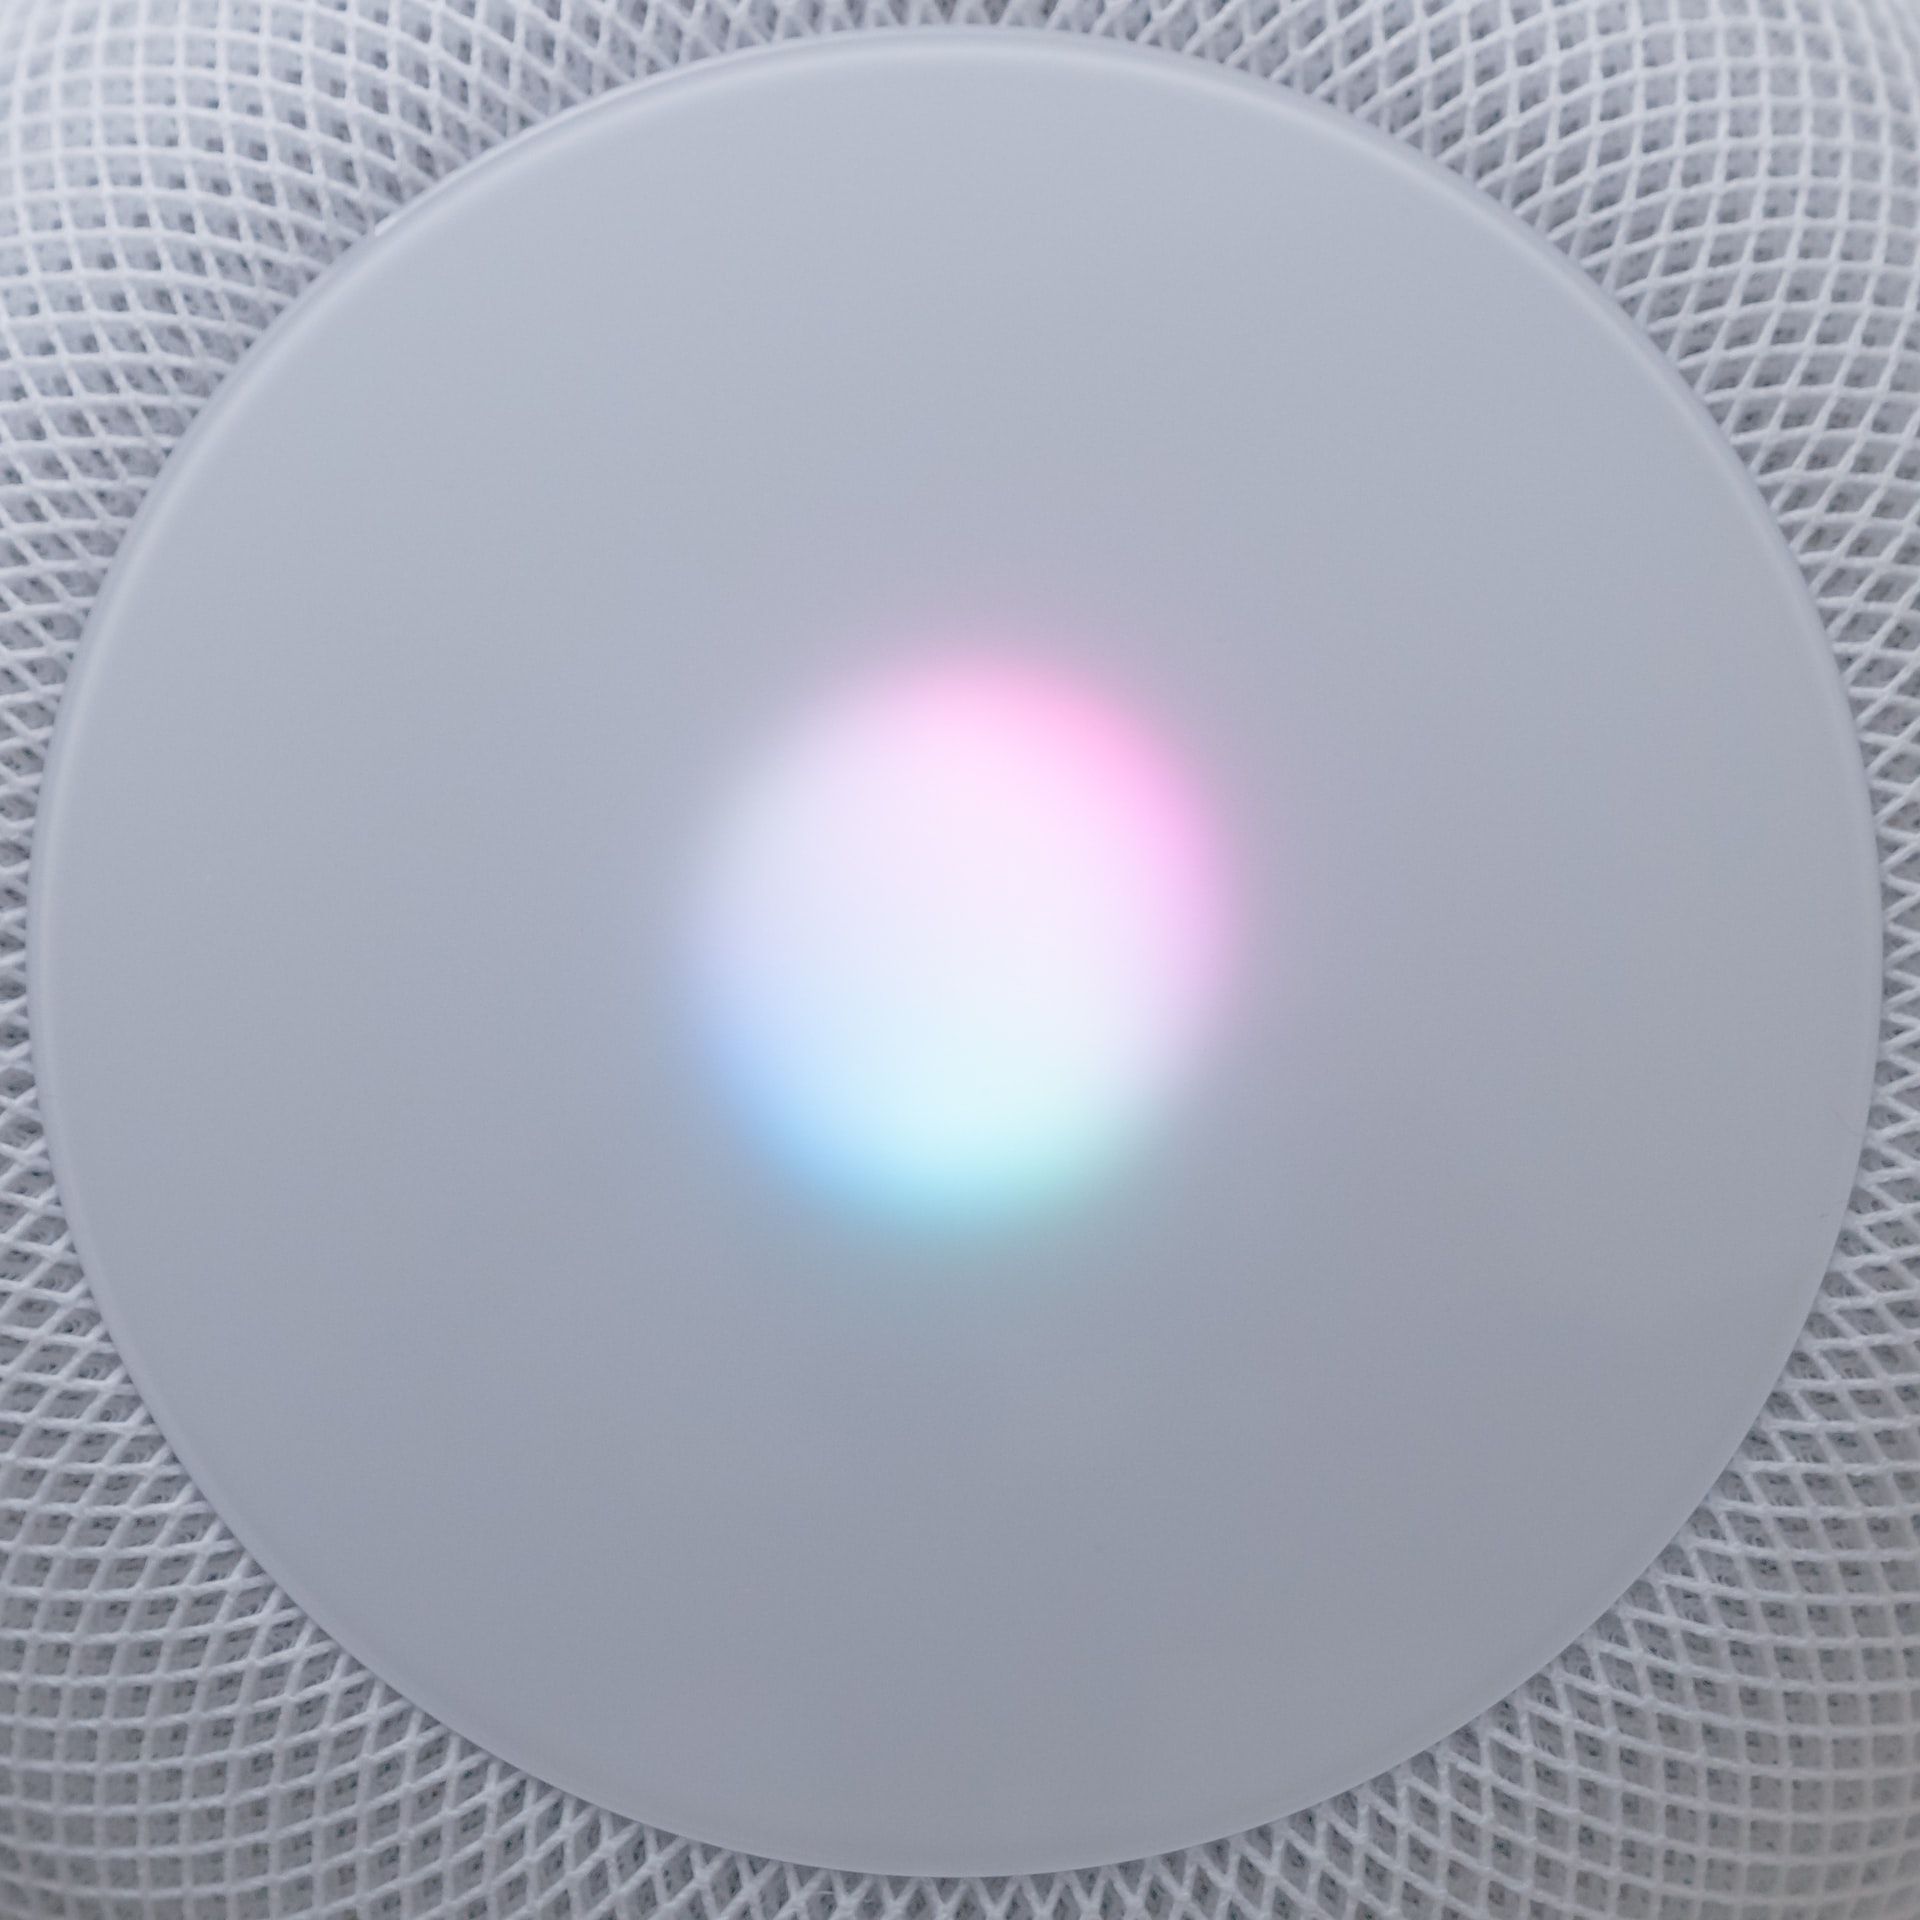 Siri light on speaker